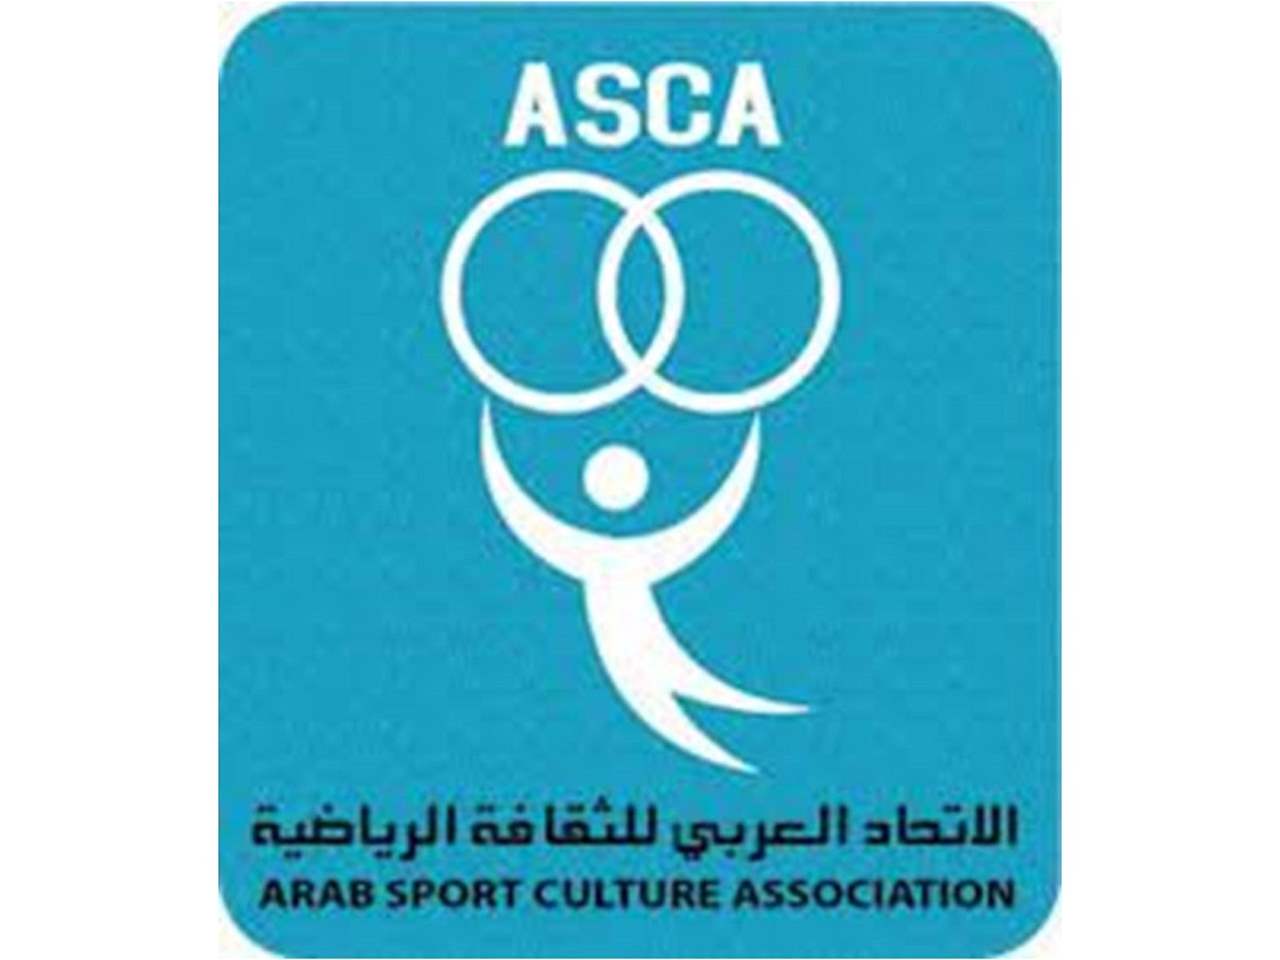 الاتحاد العربي للثقافة الرياضية يطالب بوقفة مع غزّة